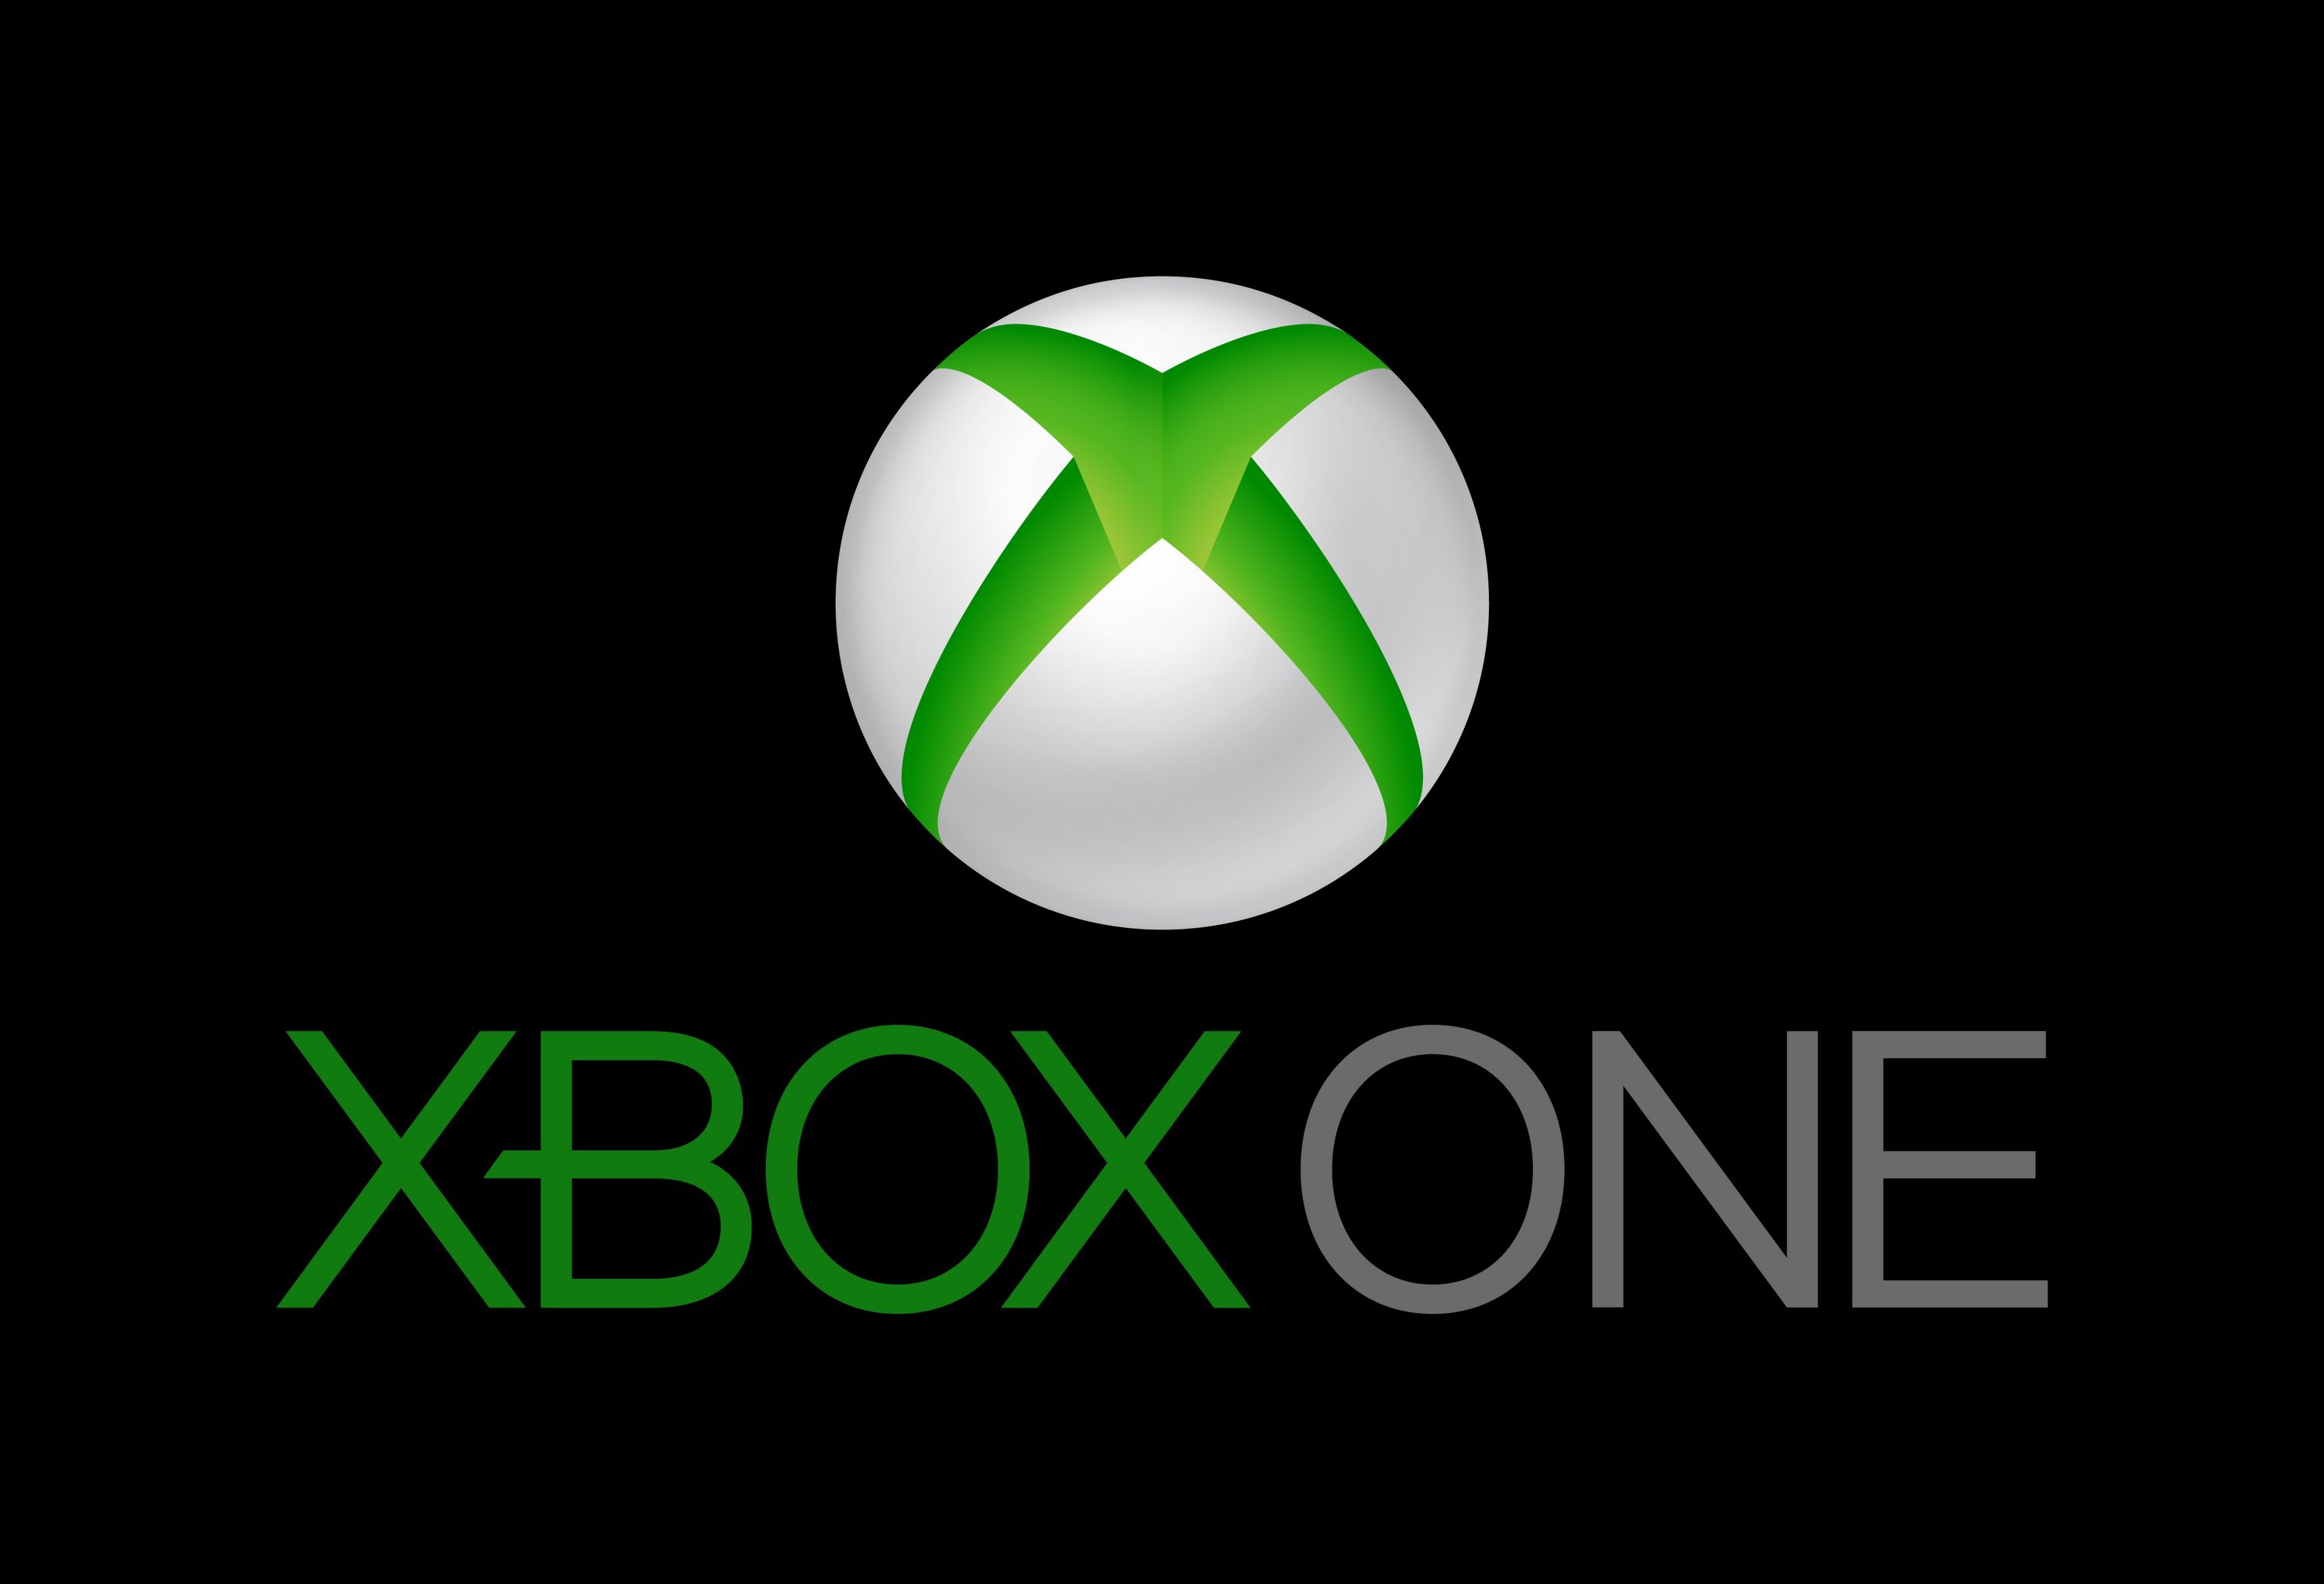 Xbox logo   Xbox one hd logo wallpaper   Xbox one logo   Xbox One 3000x2045